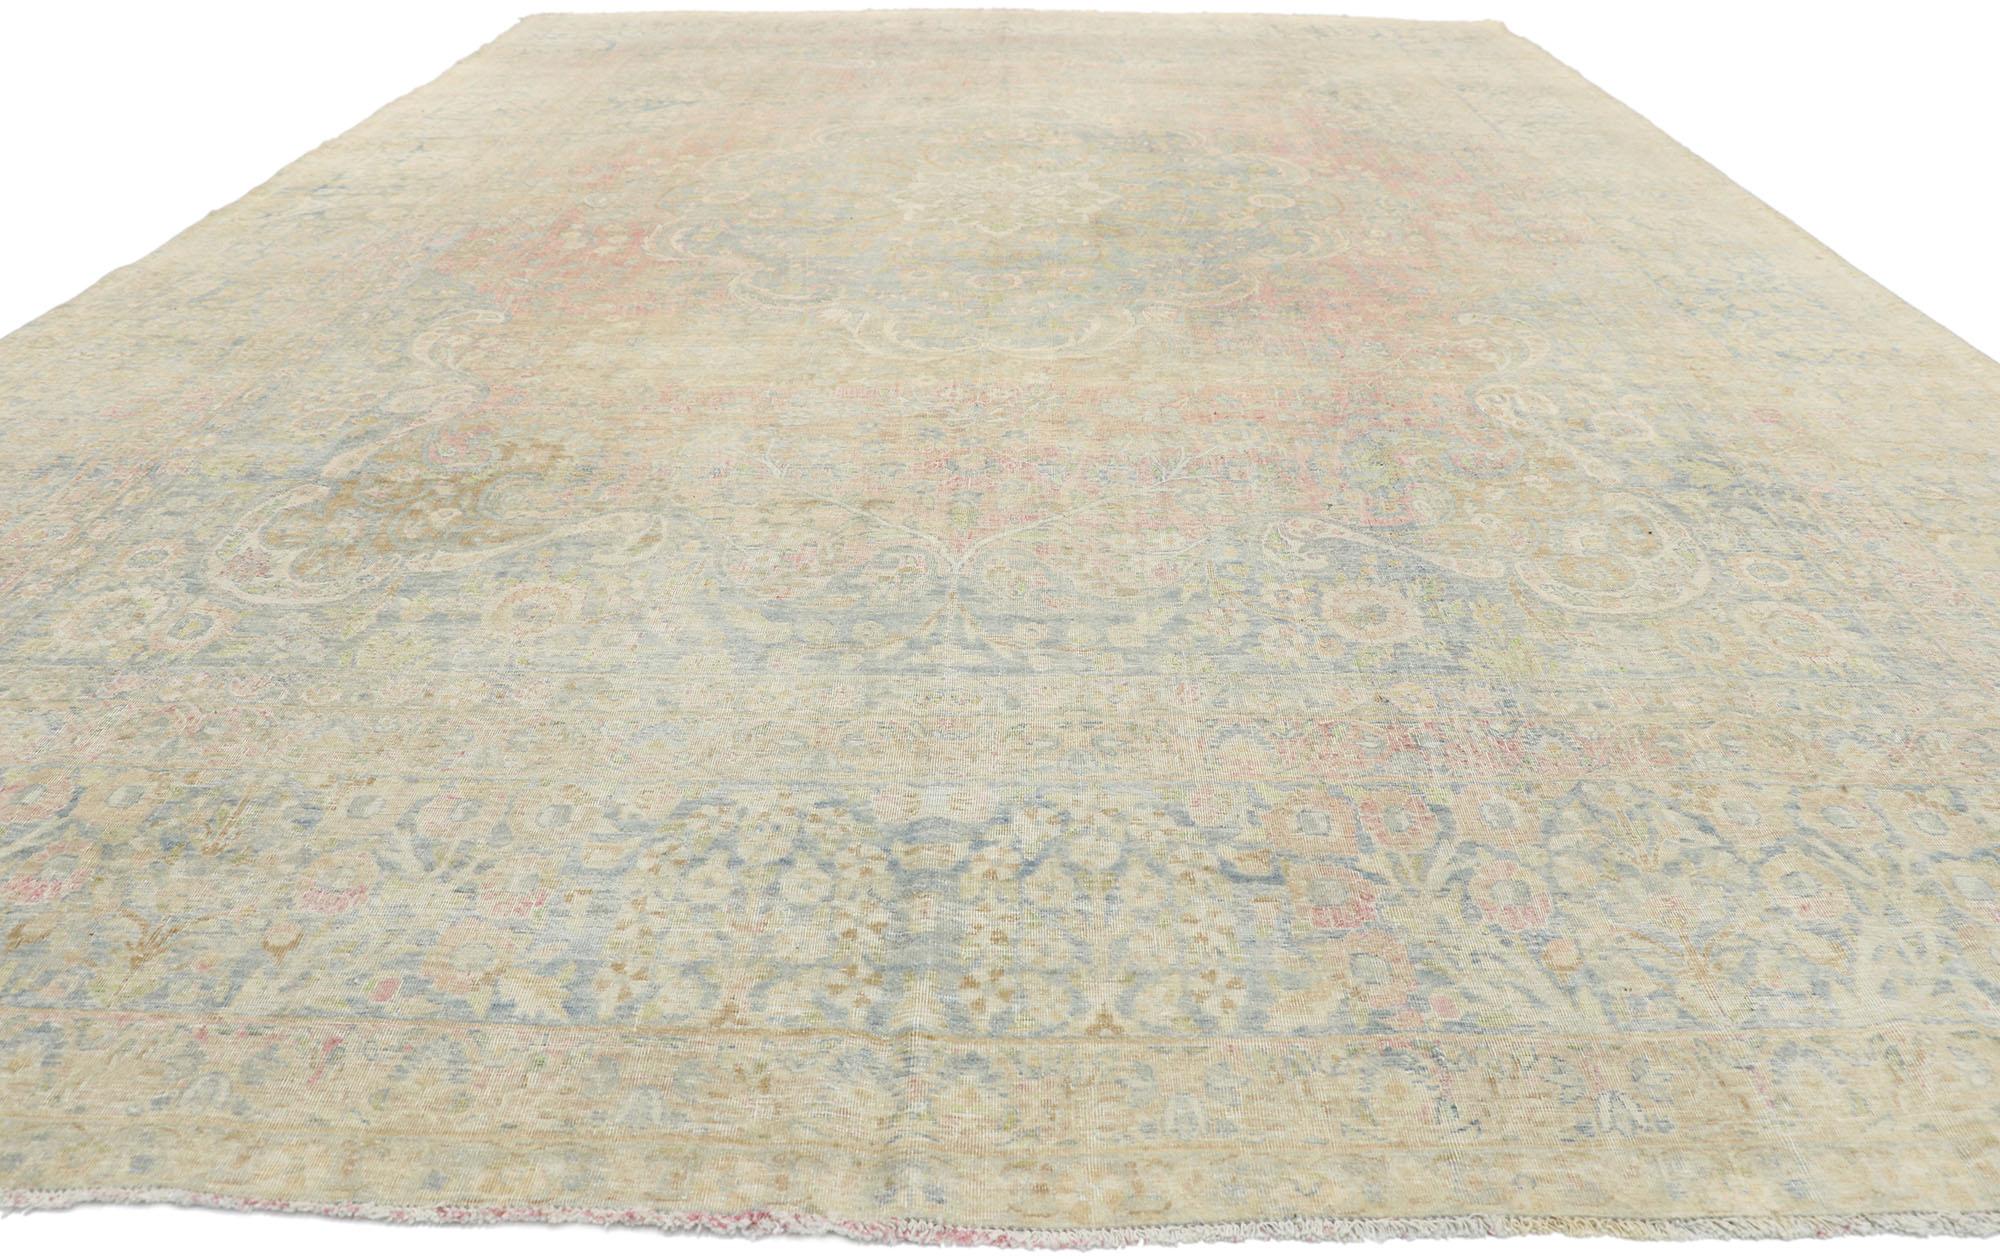 cotswold oriental rugs